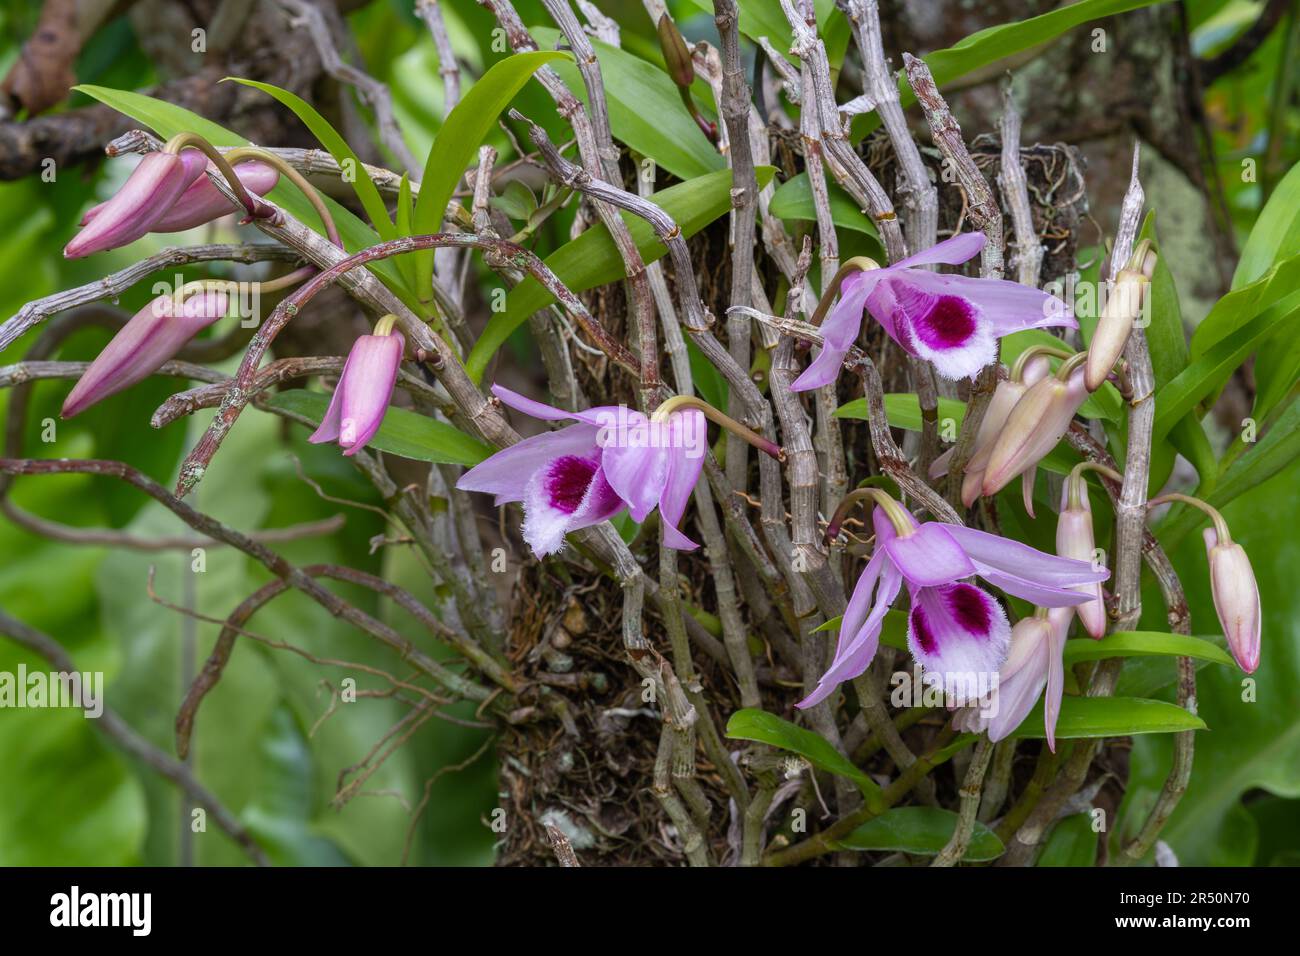 Vue rapprochée des fleurs et des bourgeons violet et rose colorés de dendrobium anosmum orchidée épiphytique en plein air dans le jardin tropical Banque D'Images